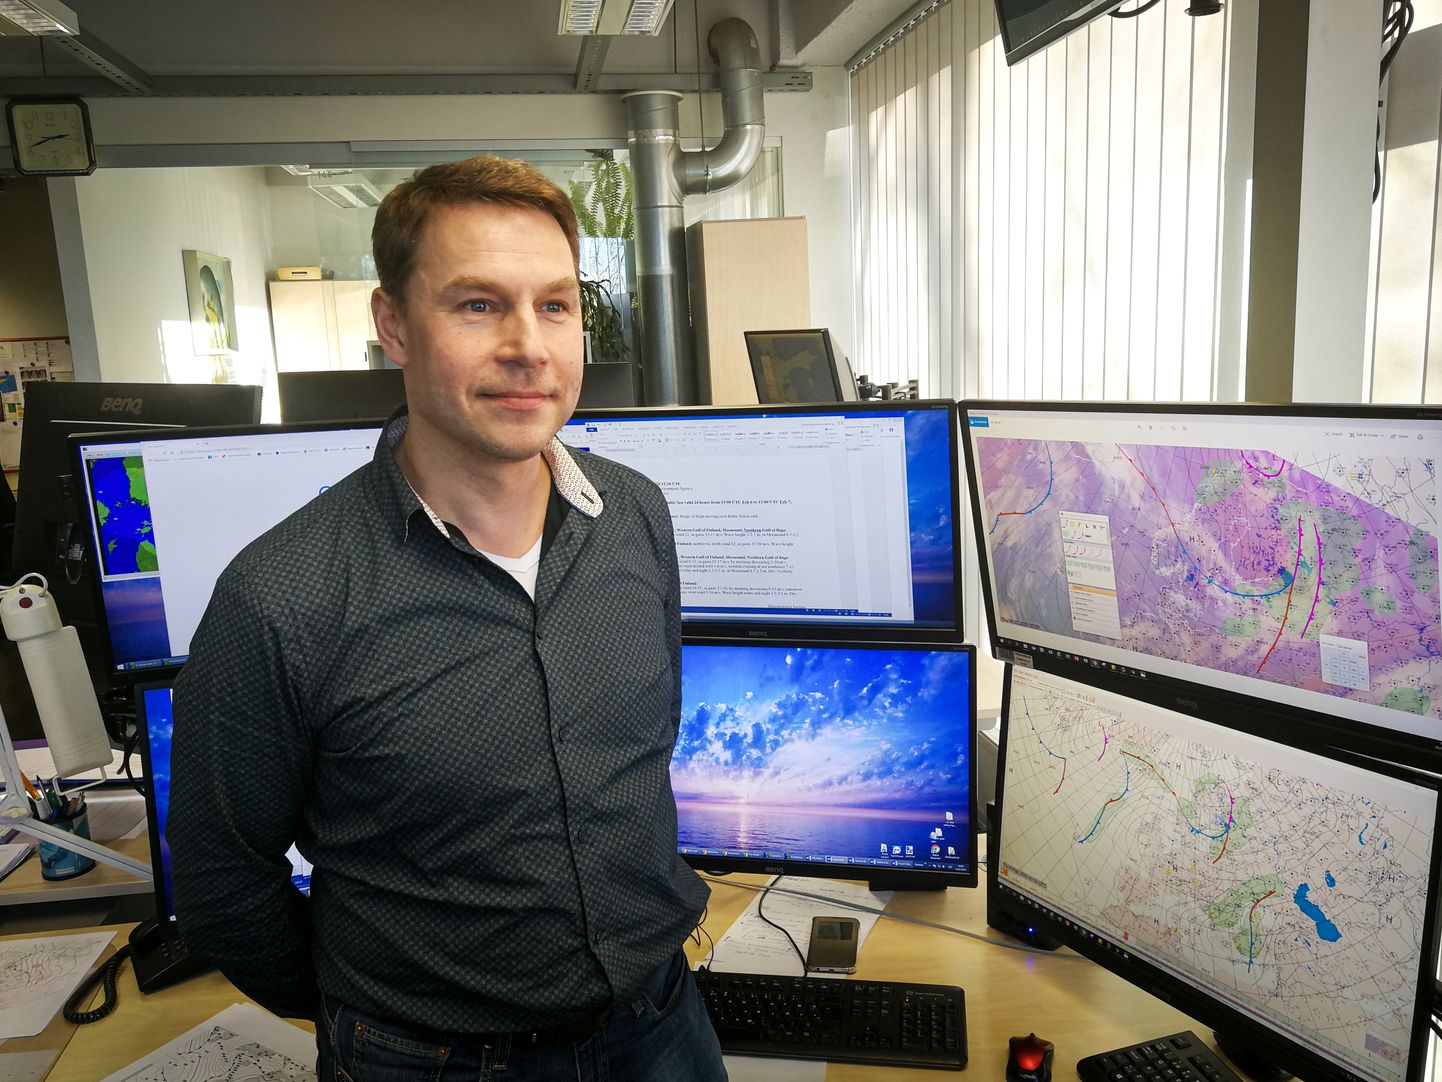 ÕIGES AMETIS: Veel hiljuti Saaremaal erinevaid ameteid pidanud Ivar Ansper on tagasi erialasel tööl keskkonnaagentuuris.